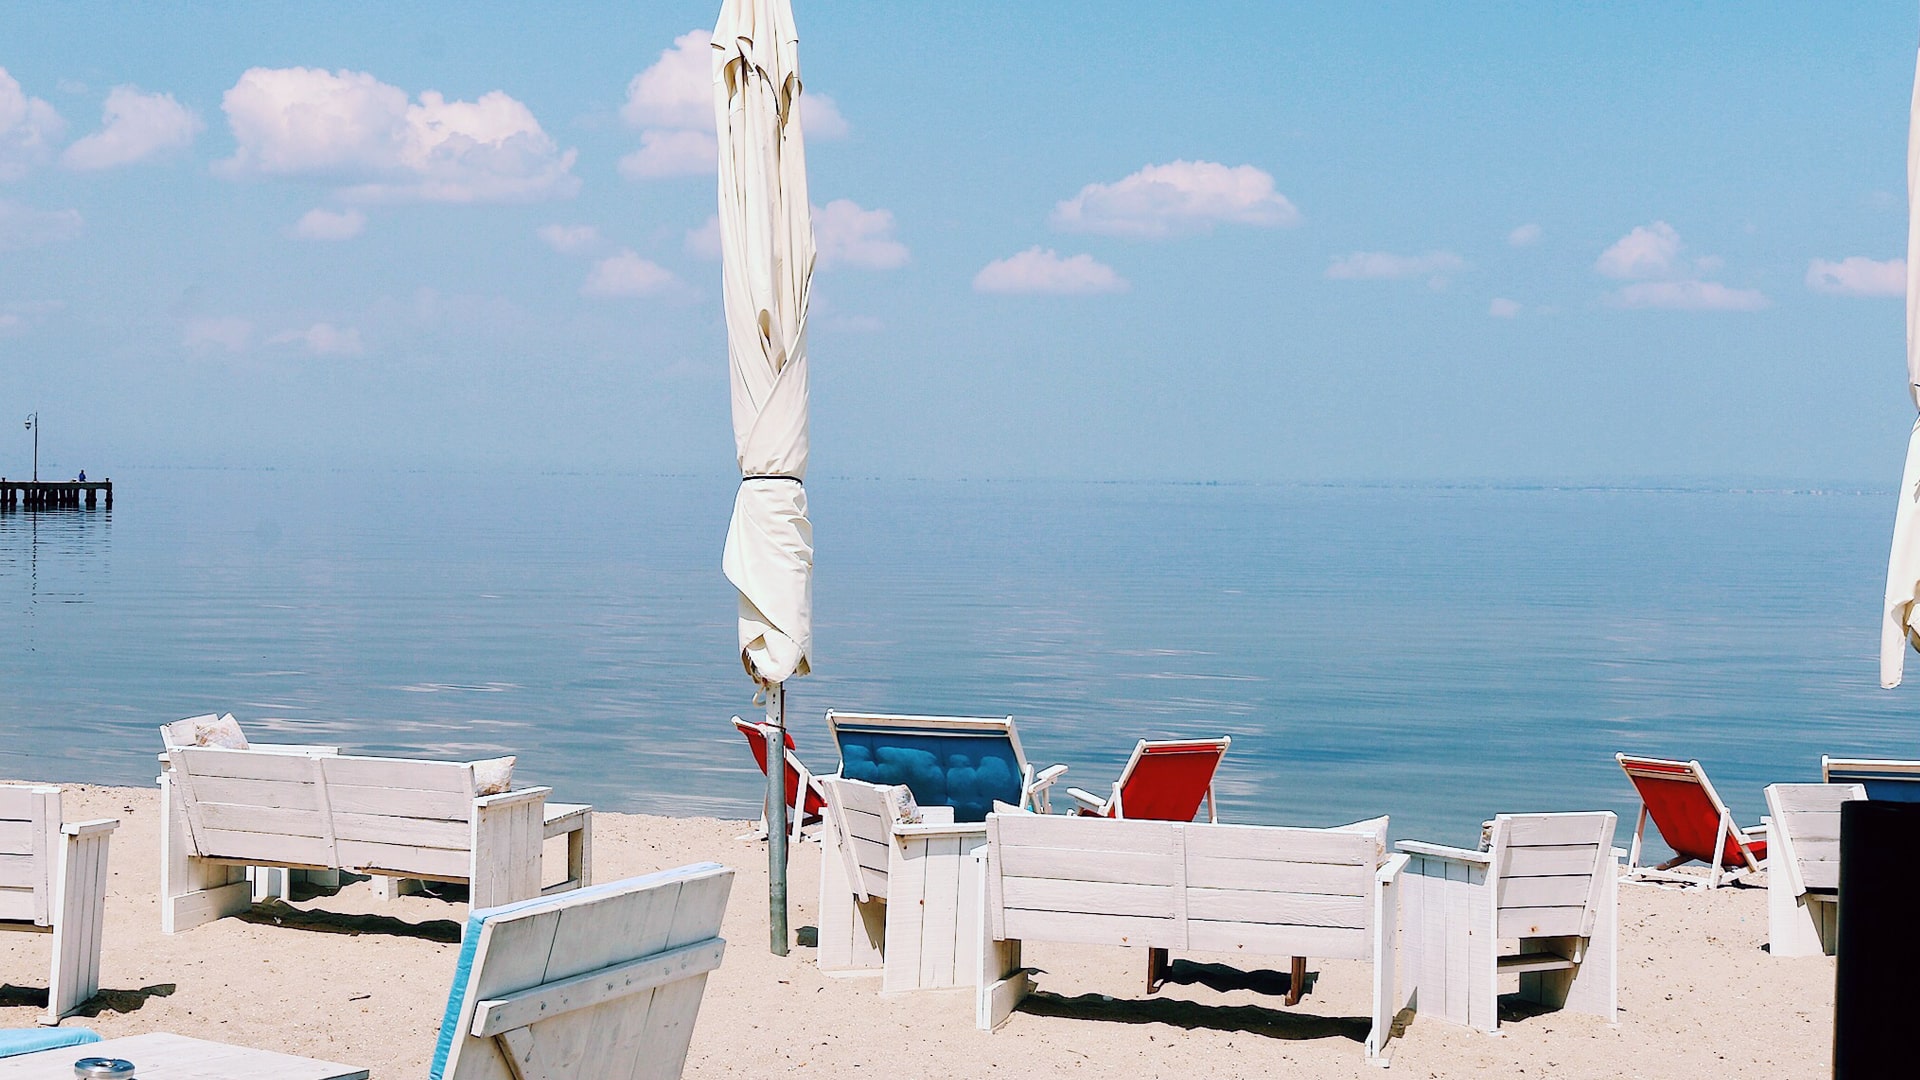 Calm Aegean sea with beach chairs and umbrellas.